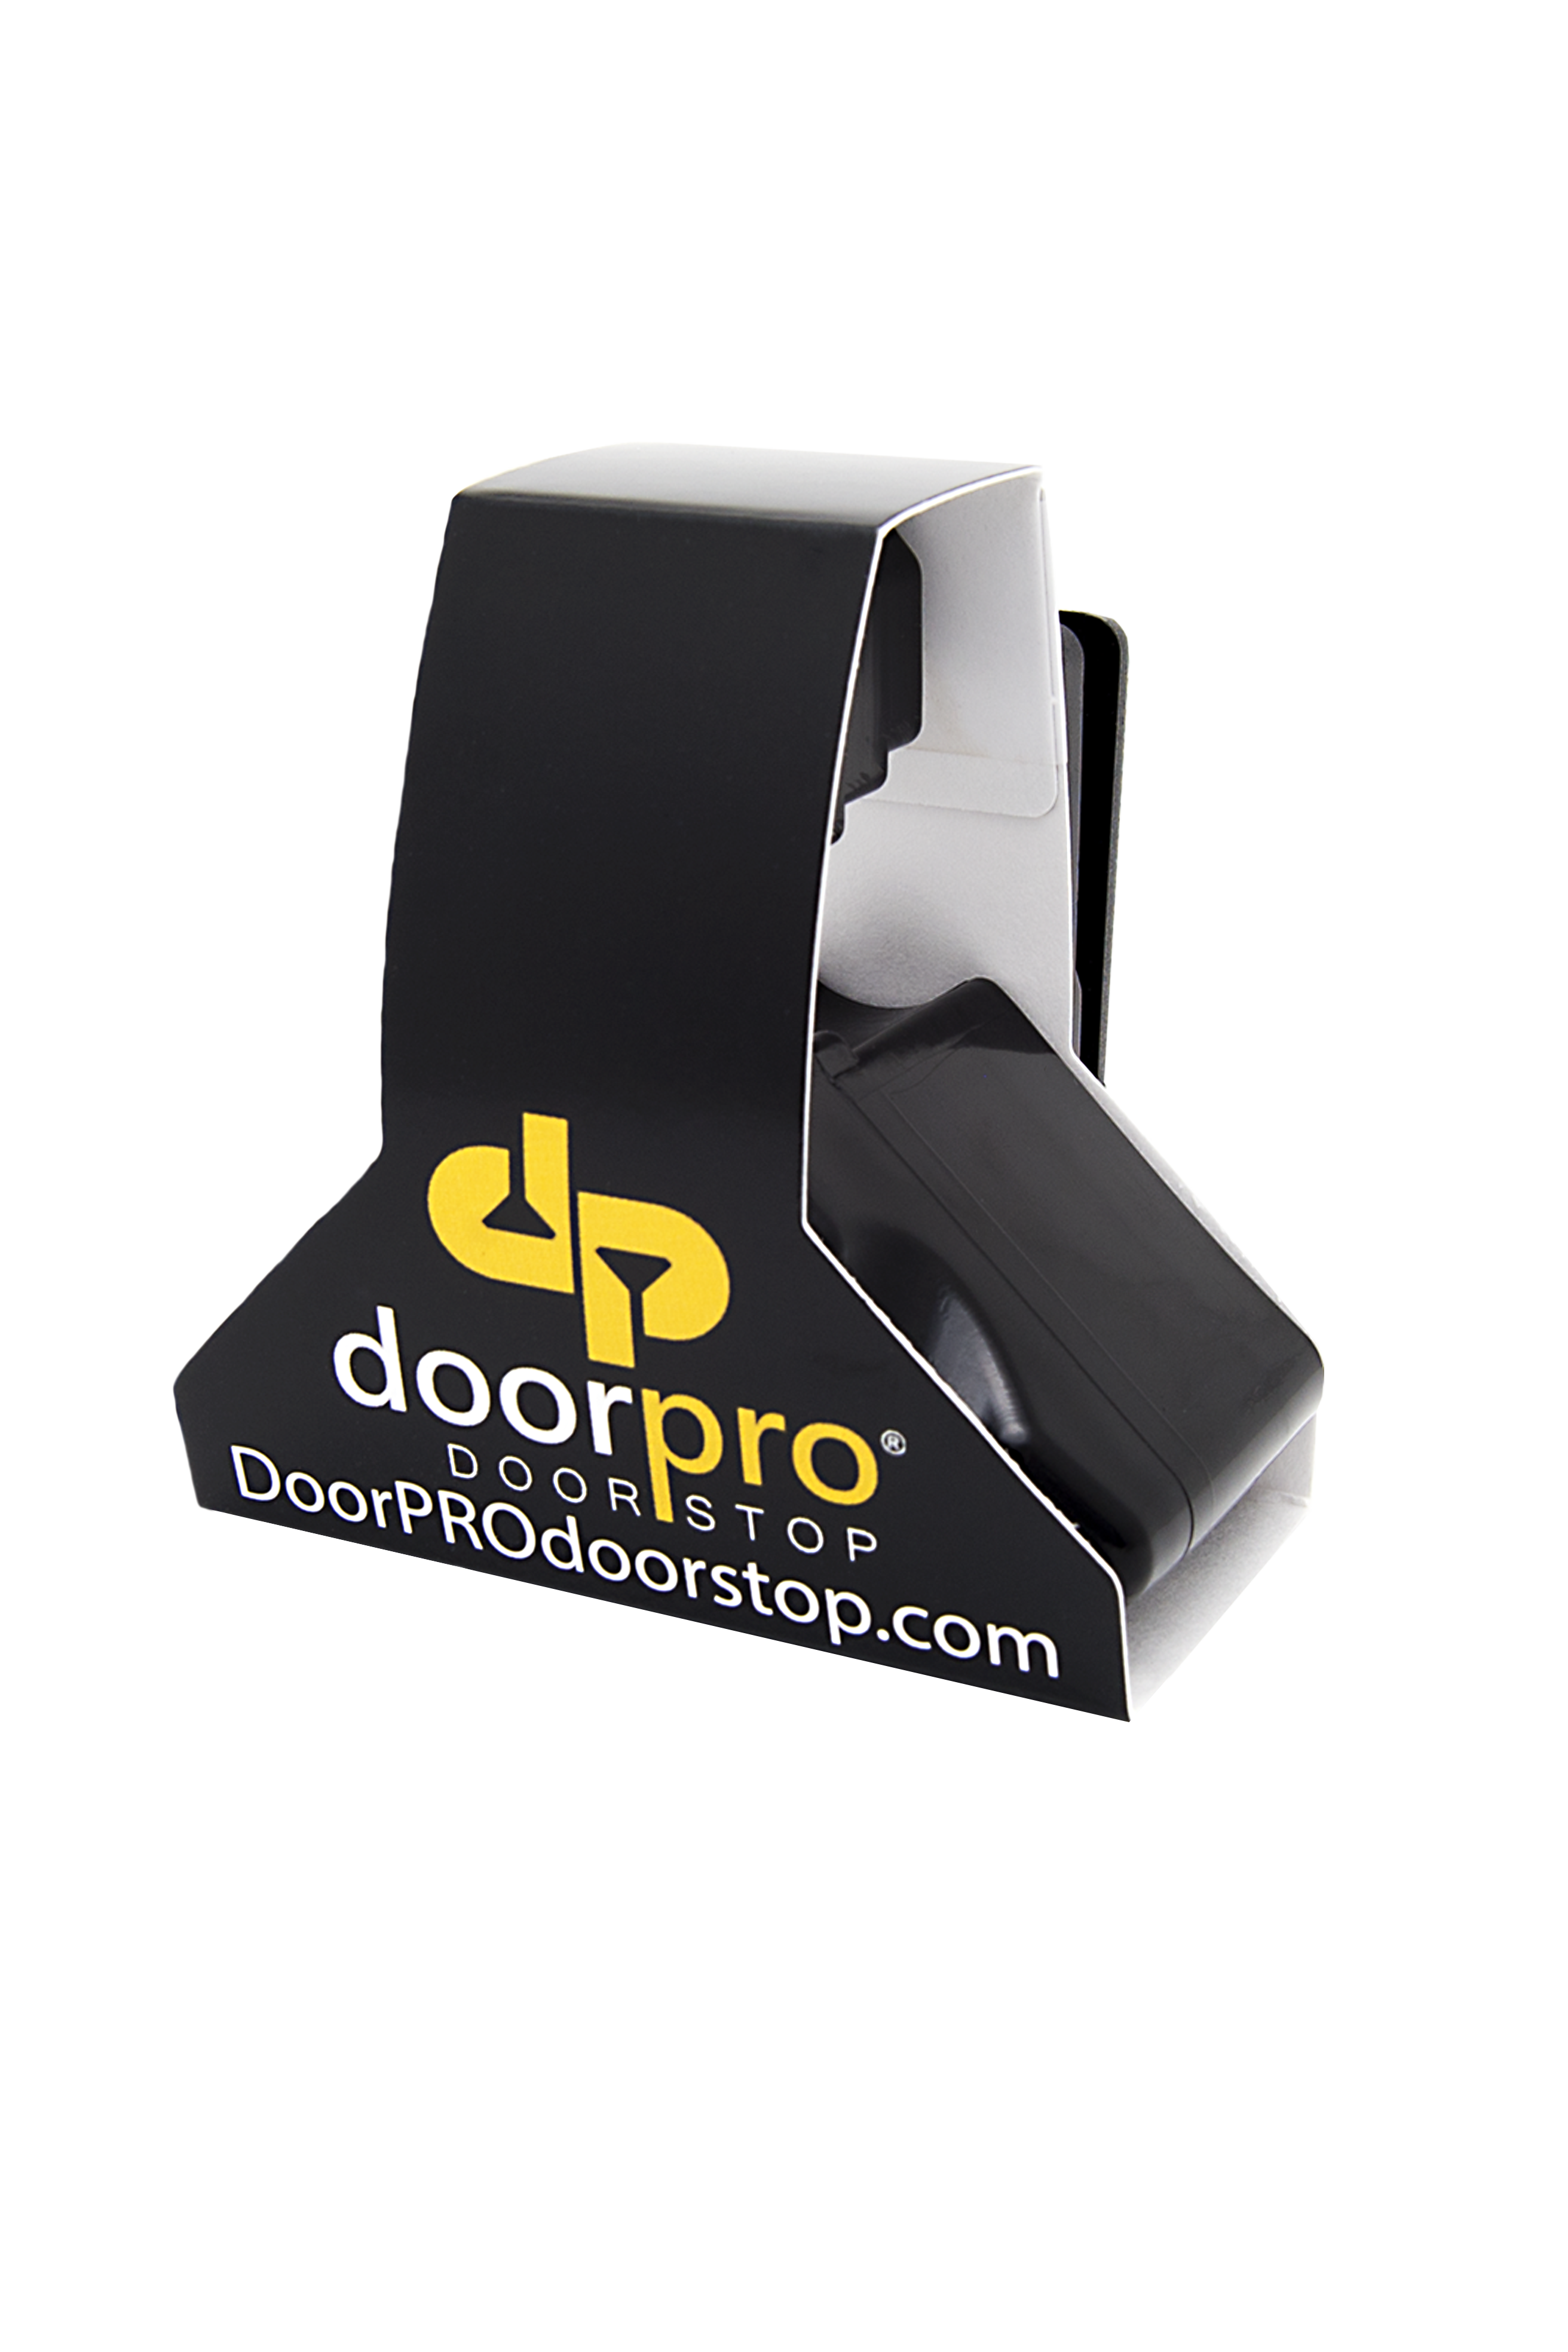 Doorpro Doorstop